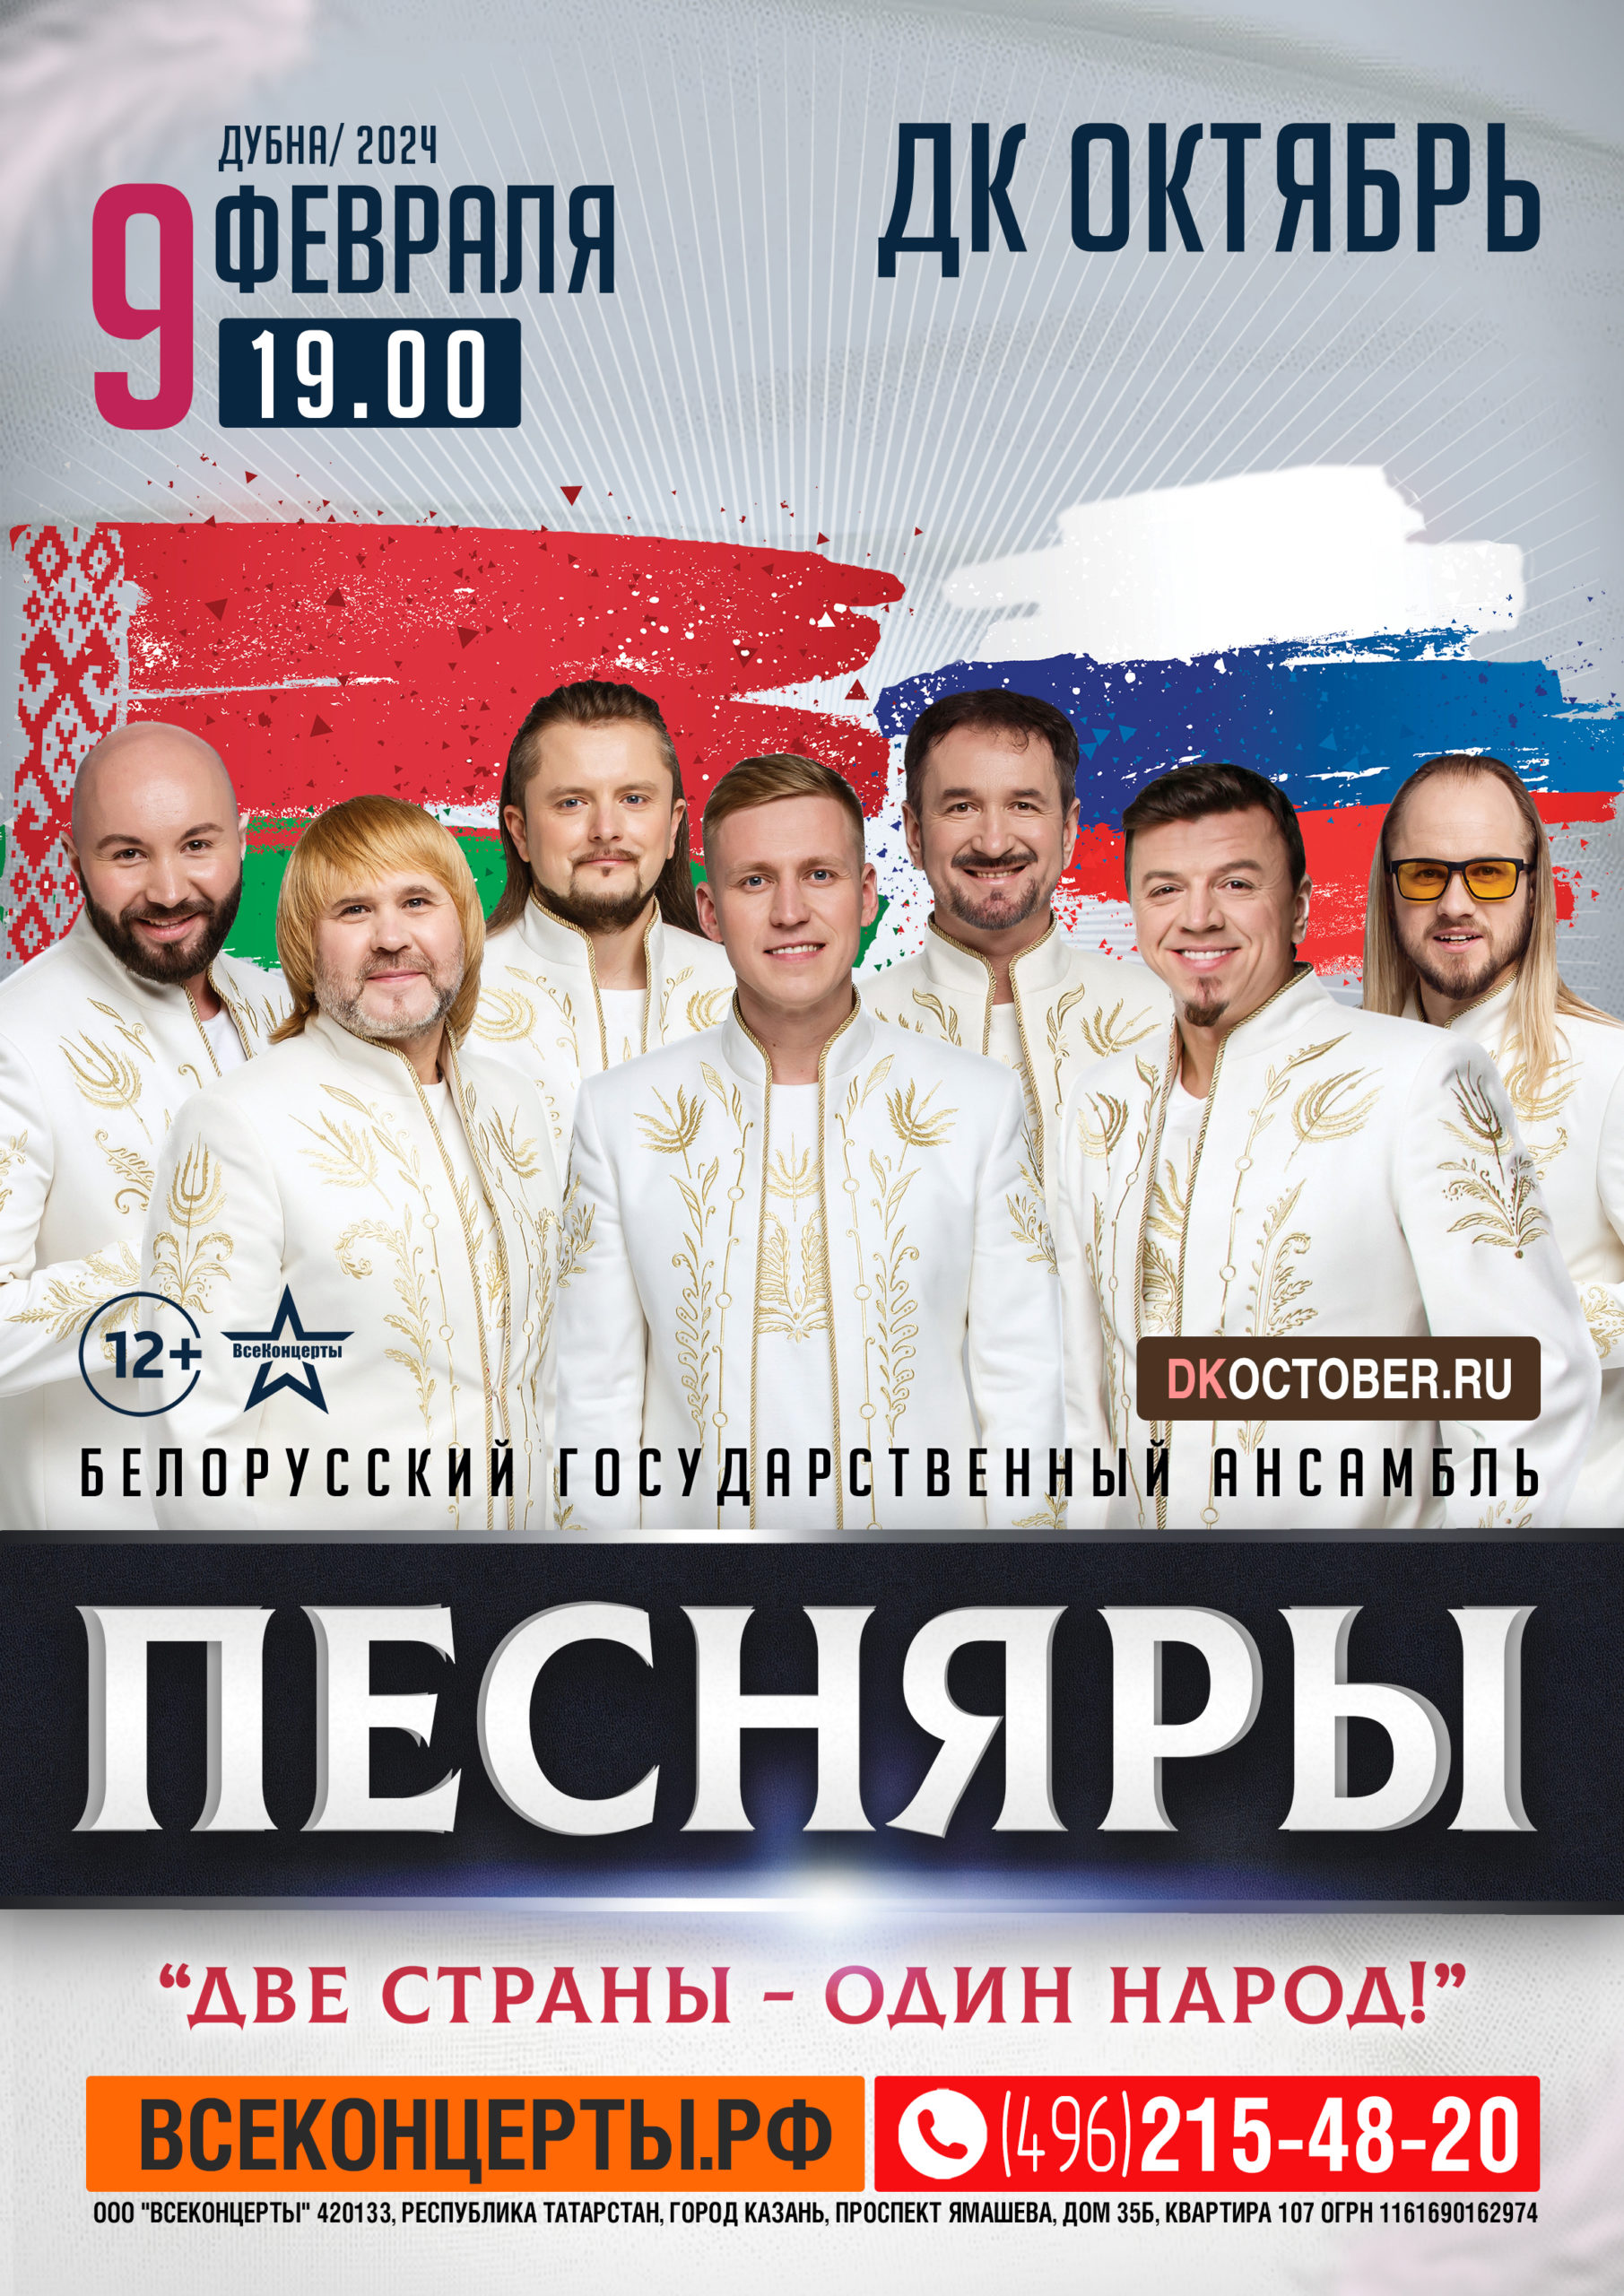 Концерт Белорусского государственного ансамбля «ПЕСНЯРЫ», 12+